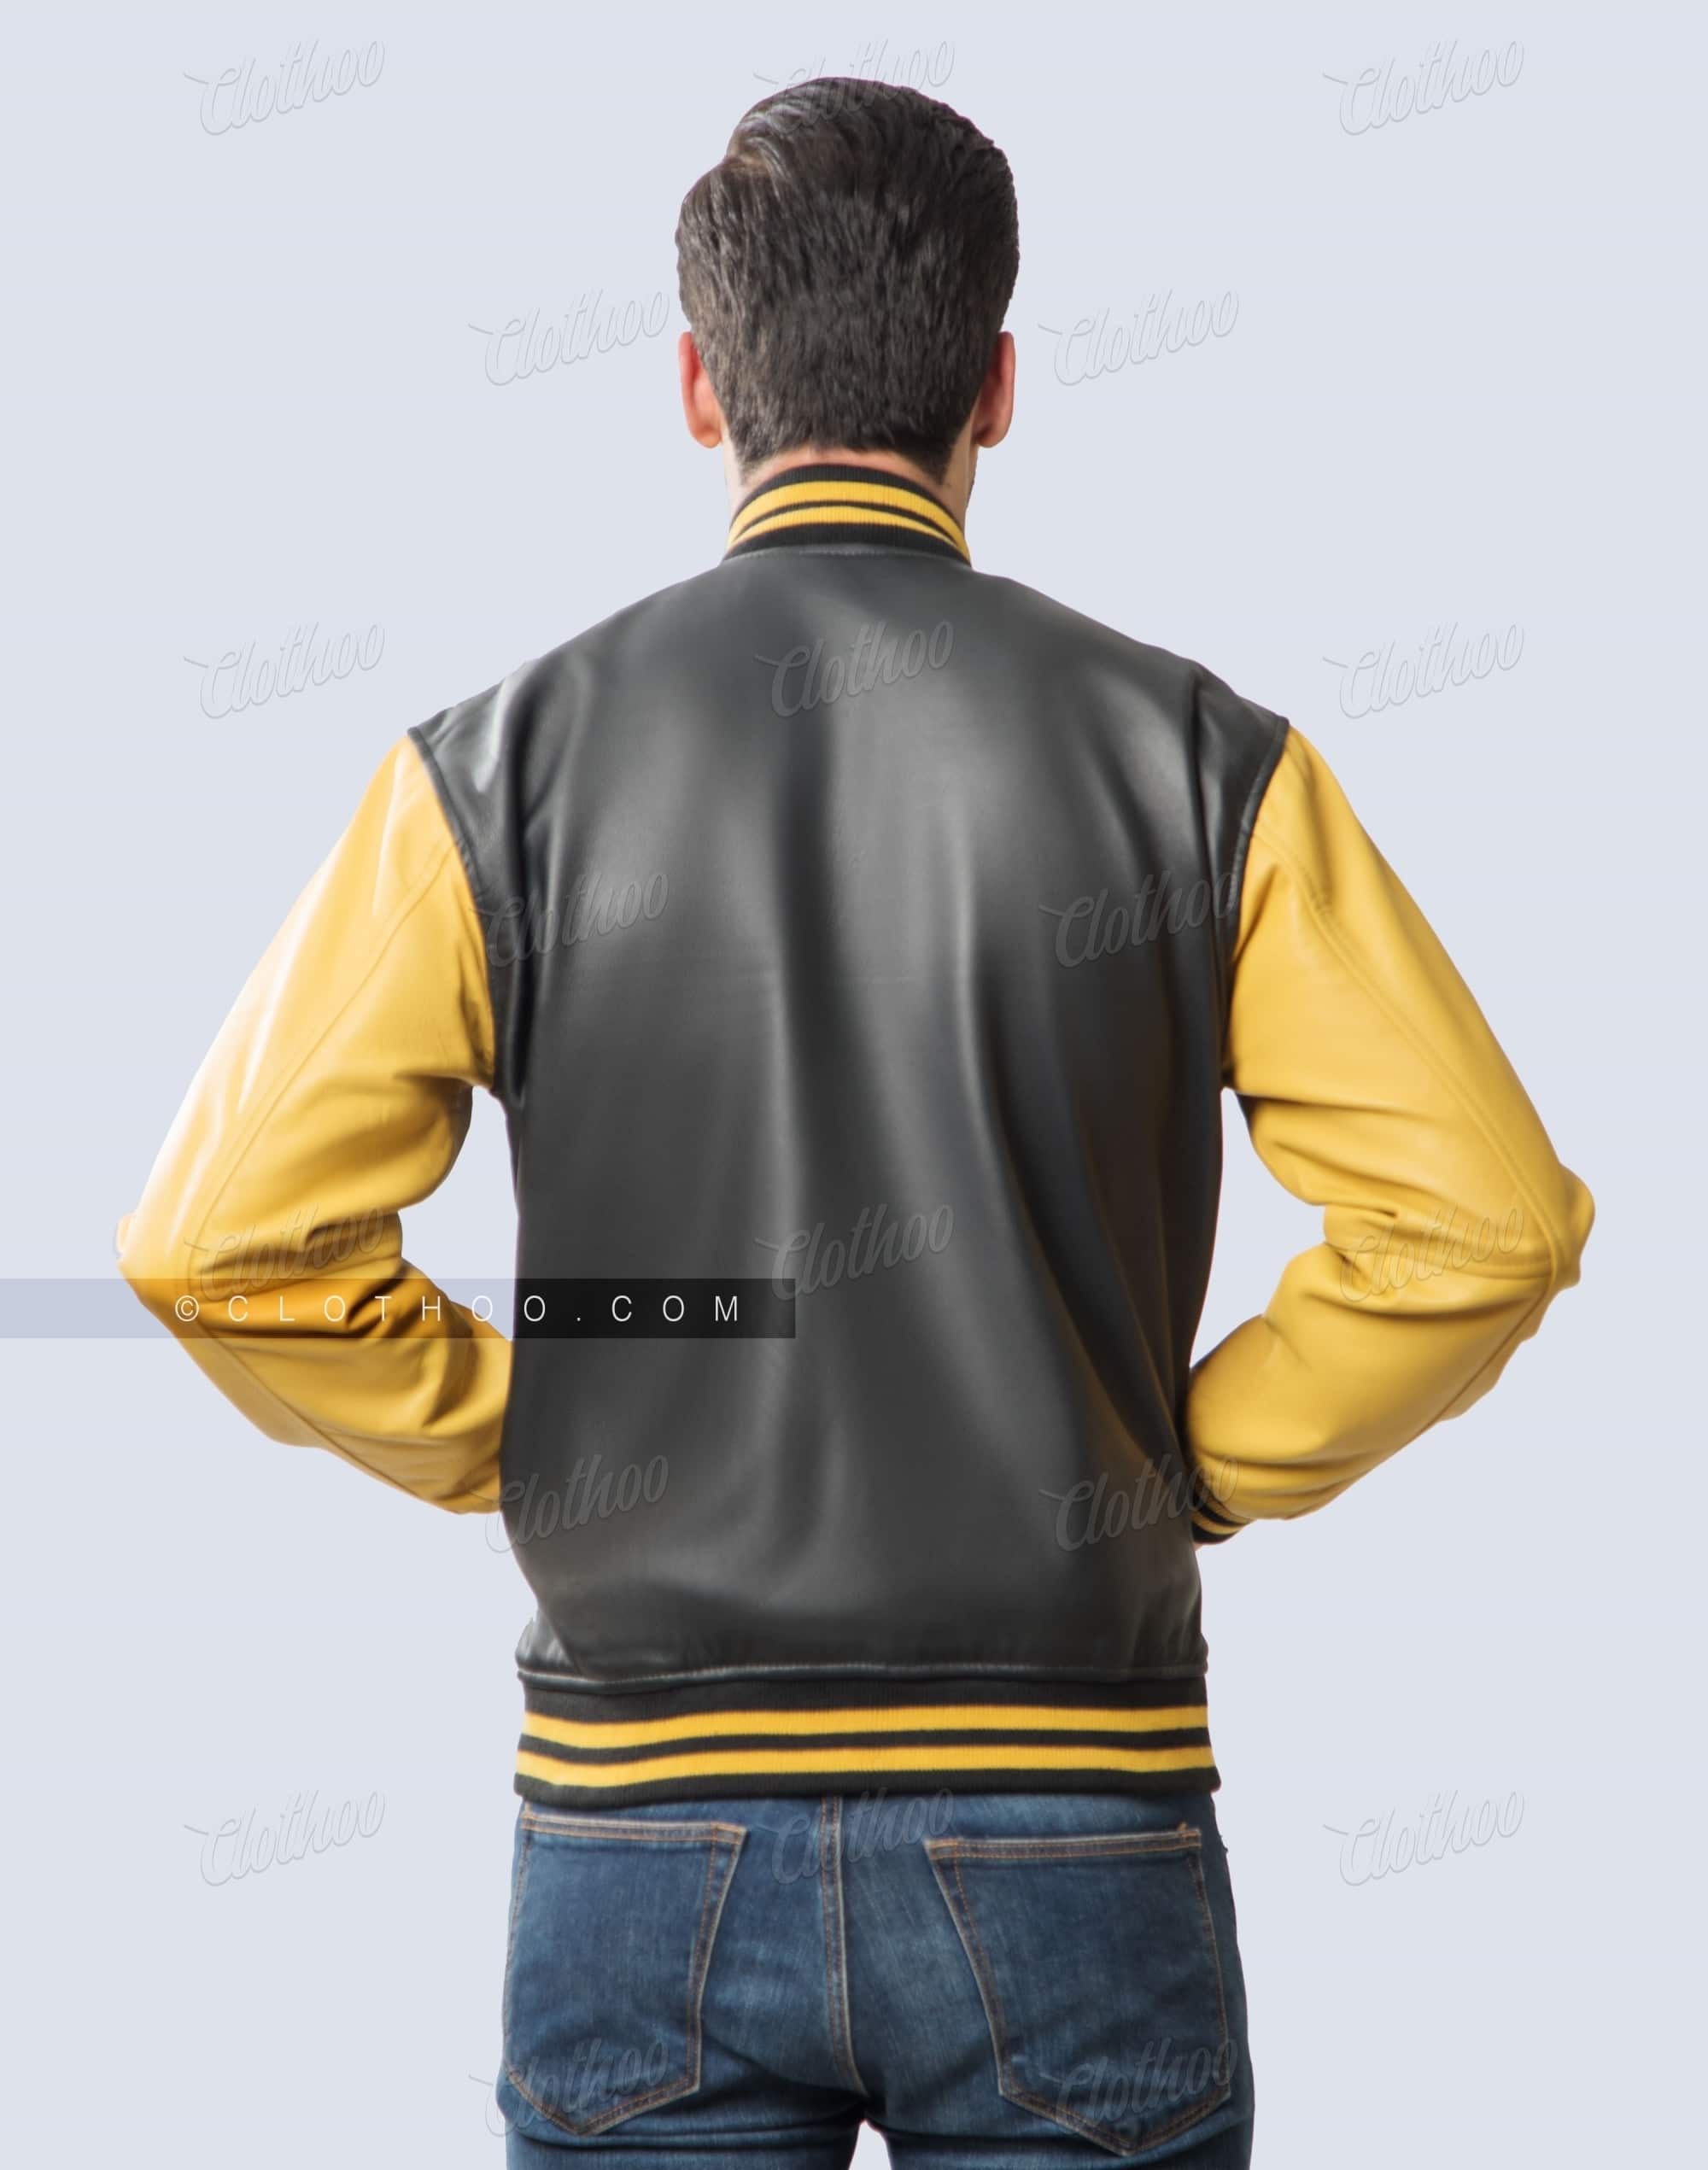 Personalized Varsity Jackets | Gold & Black Leather | Clothoo